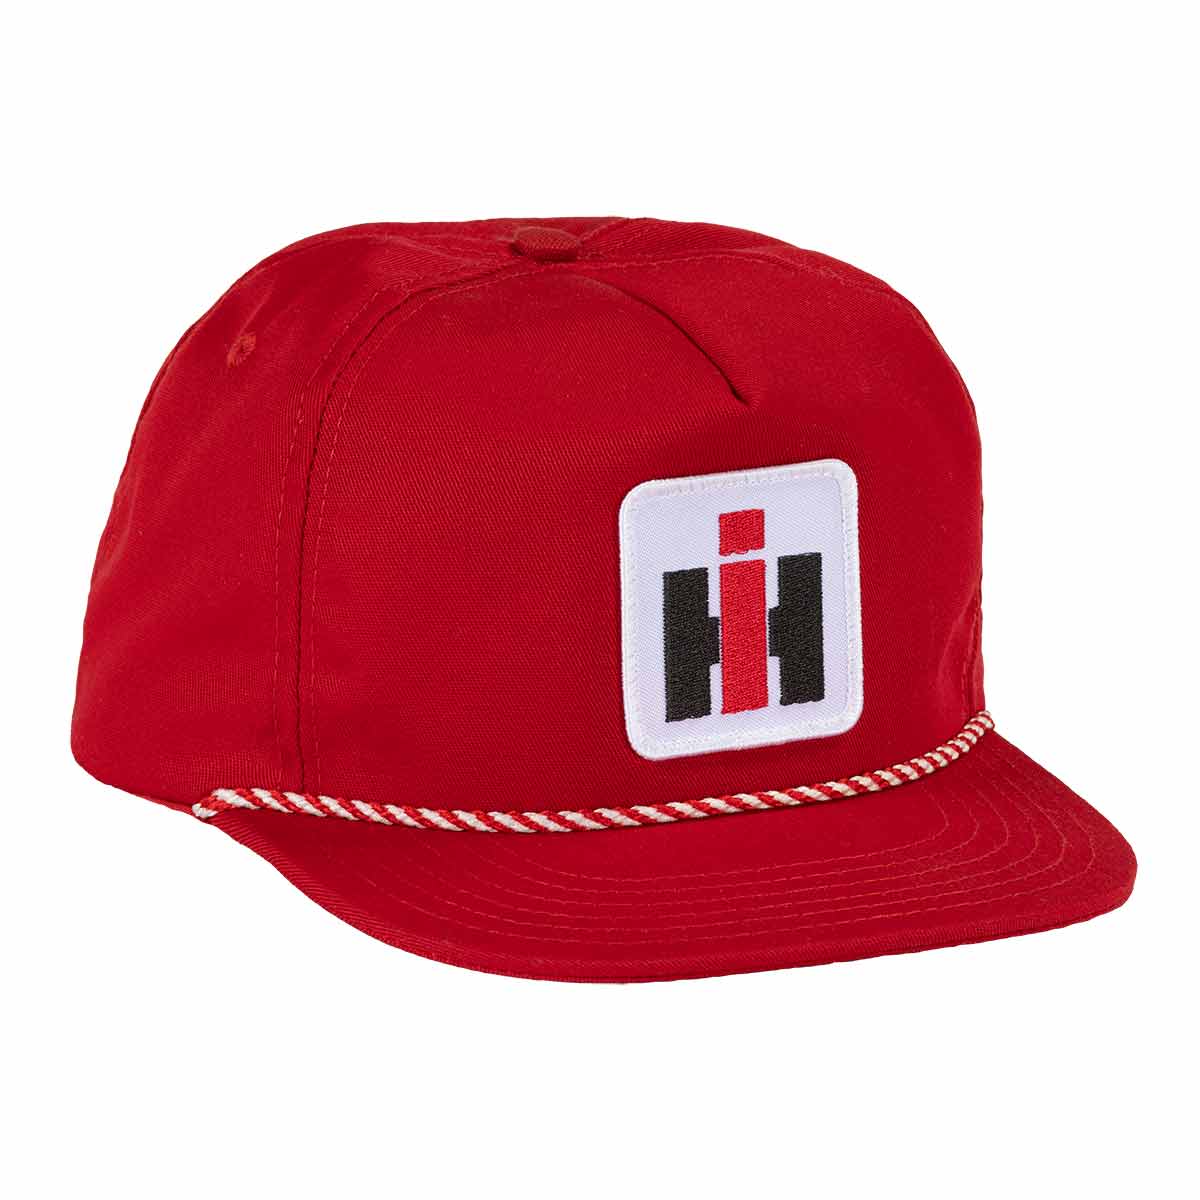 international harvester red dealer rope hat made in usa